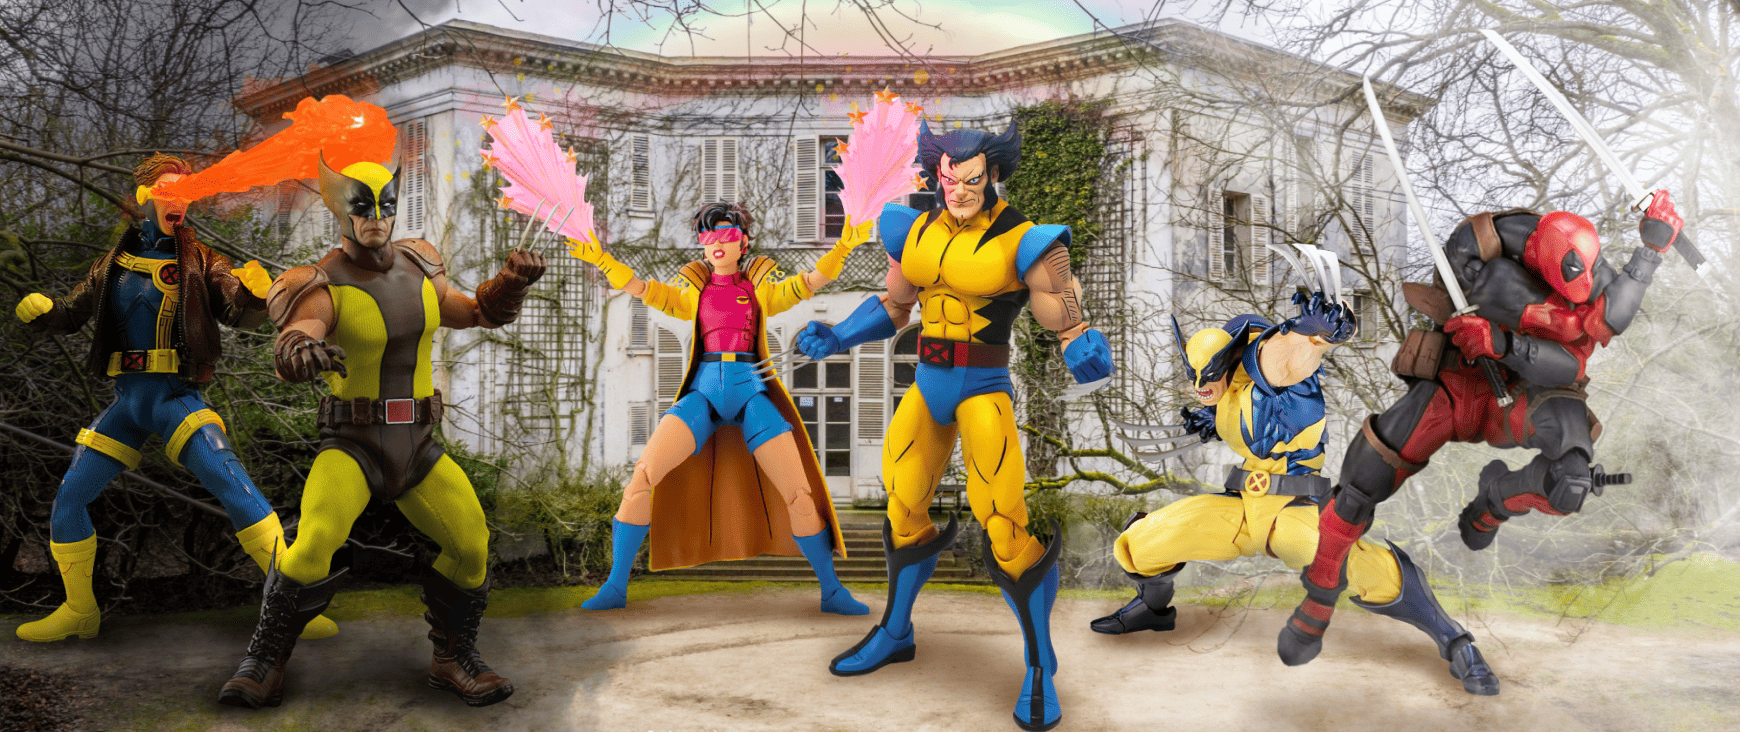 Mezco, Mondo and Revoltech X-Men action figures